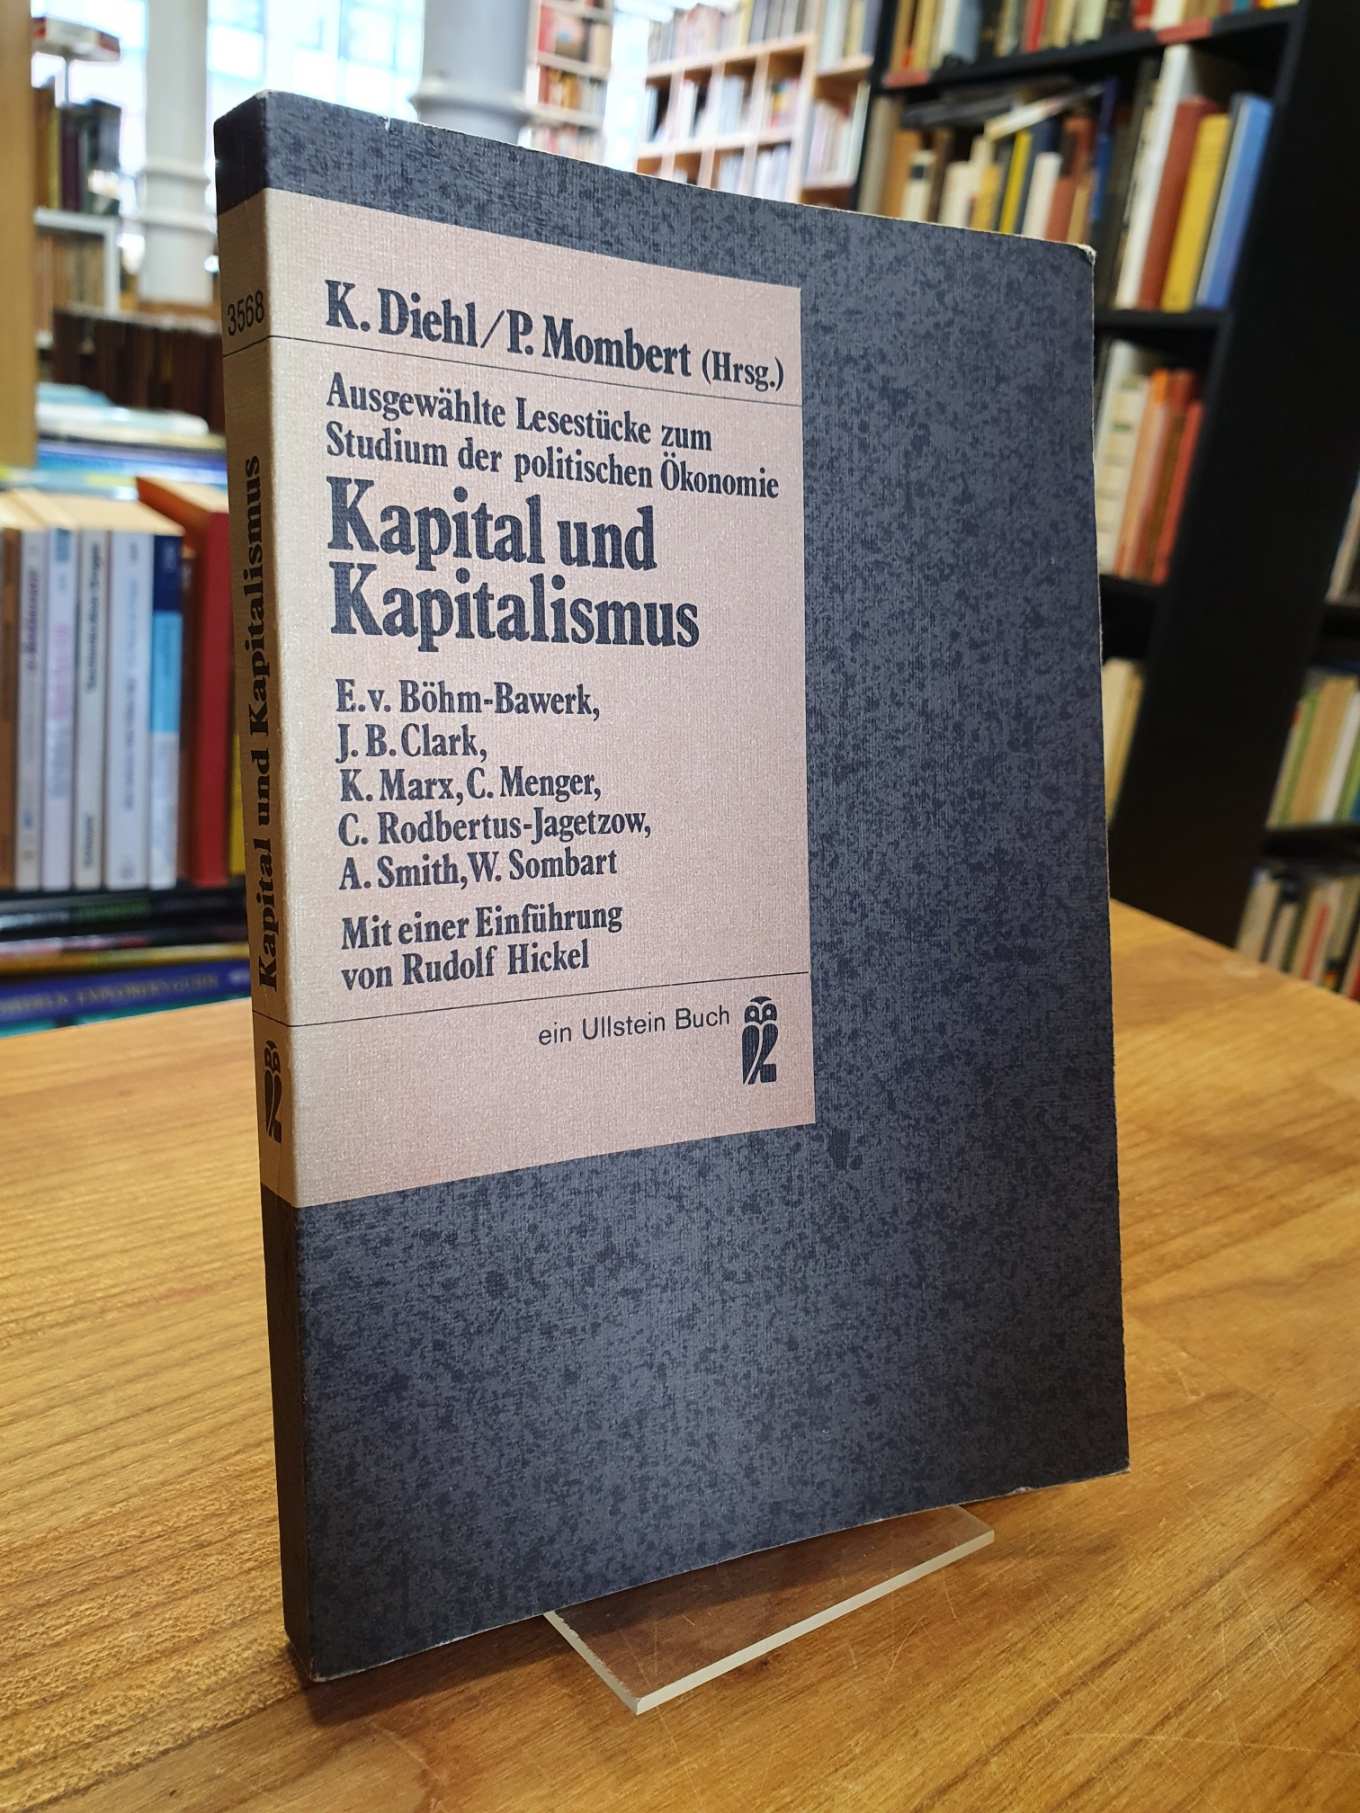 Diehl, Ausgewählte Lesestücke zum Studium der politischen Ökonomie – Band 15 – K